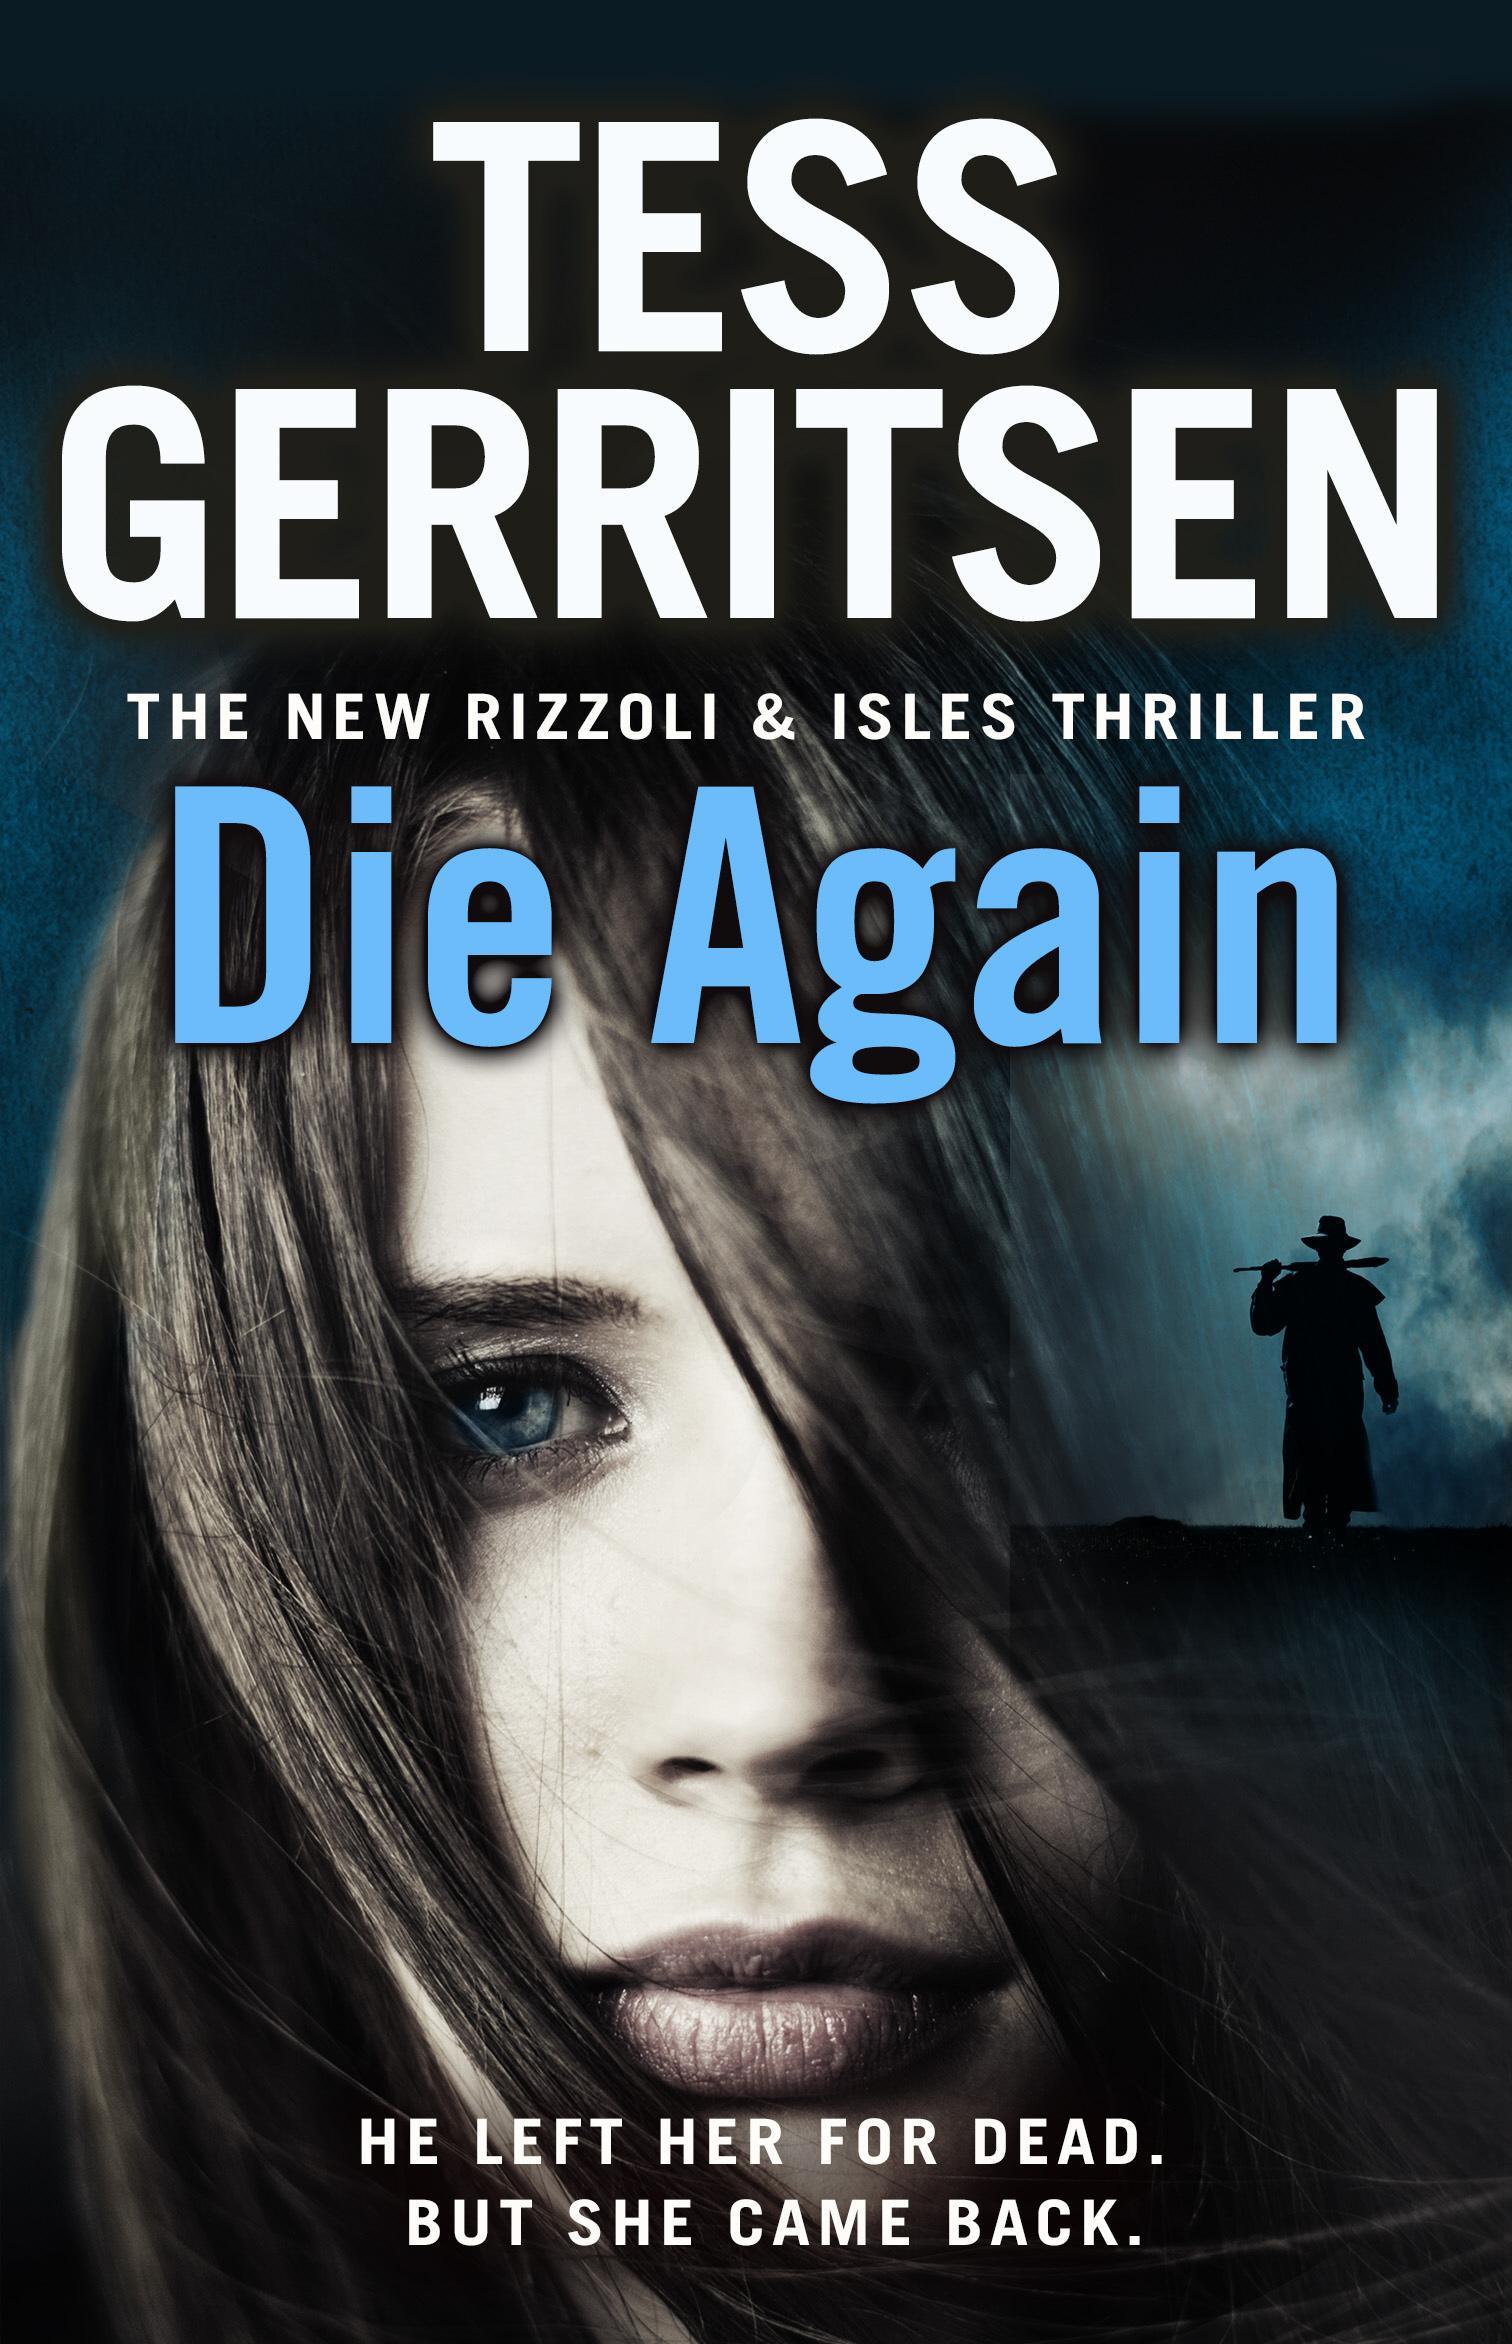 Die Again - Tess Gerritsen